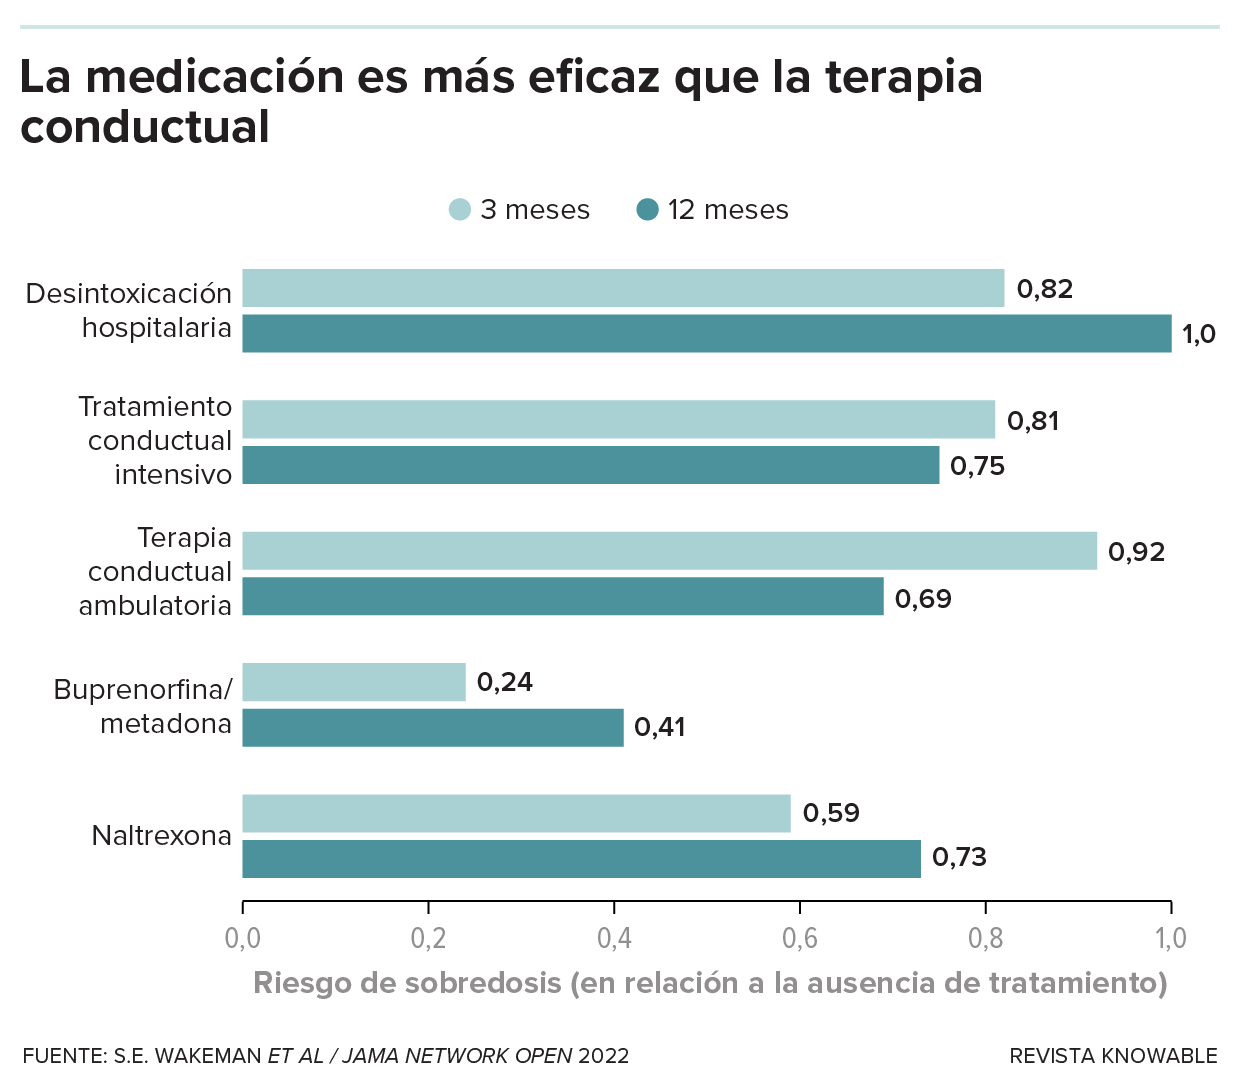 Gráfico de barras que muestra que los pacientes tratados con medicamentos tienen menos riesgo de sobredosis posterior que los tratados con otras formas de terapia.